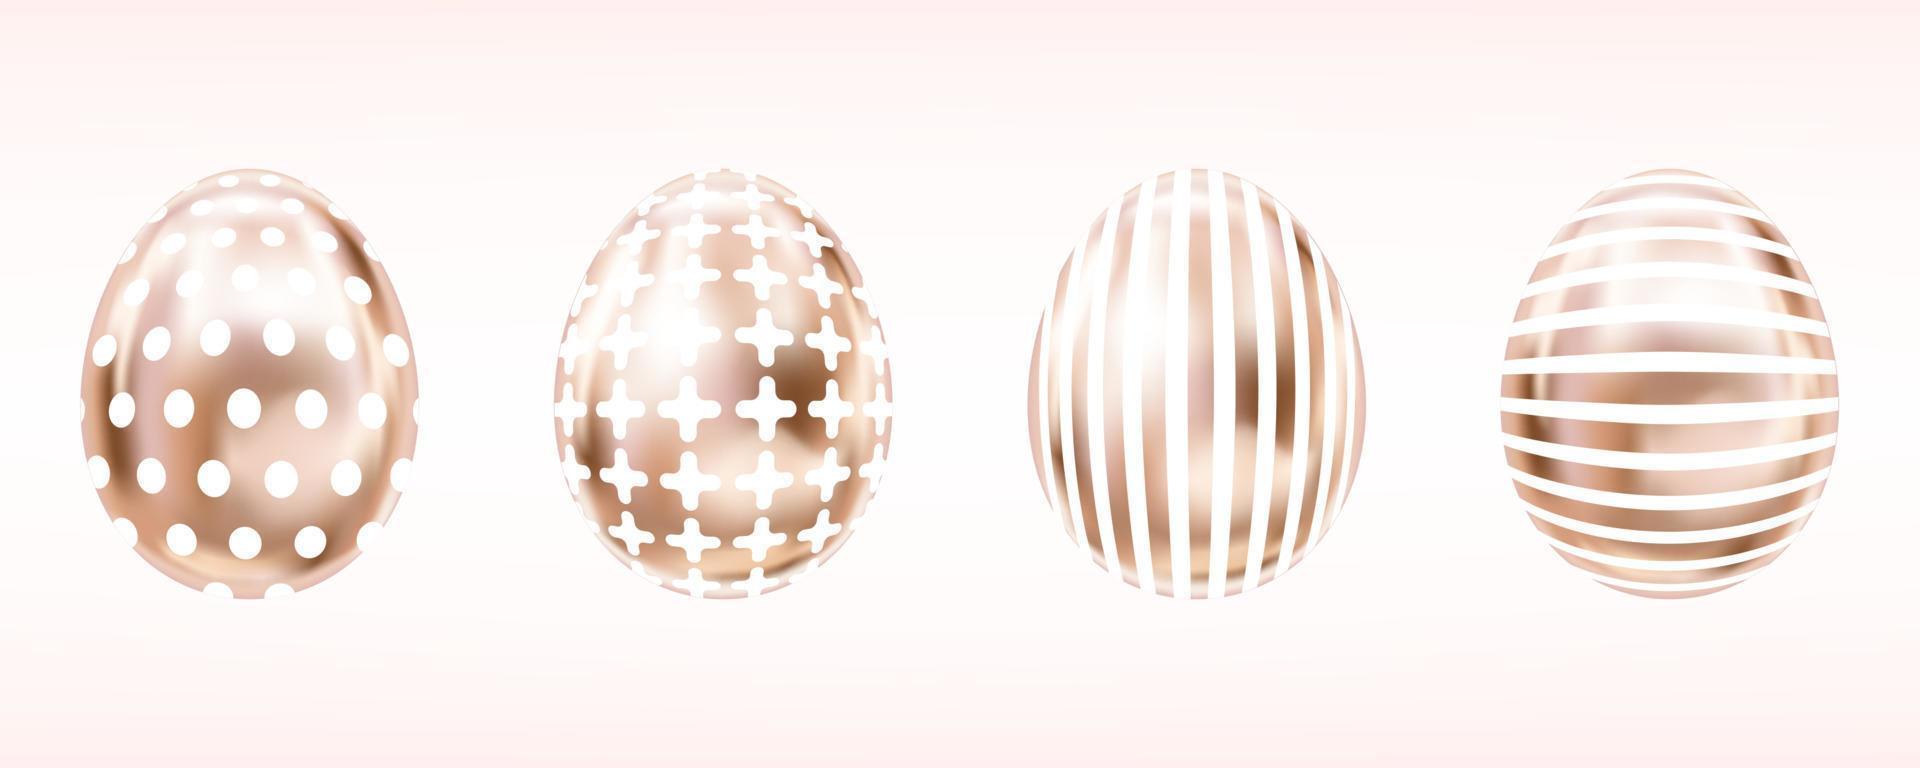 fyra blick metallisk ägg i rosa Färg med vit korsa, Ränder, prickar. isolerat objekt för påsk vektor